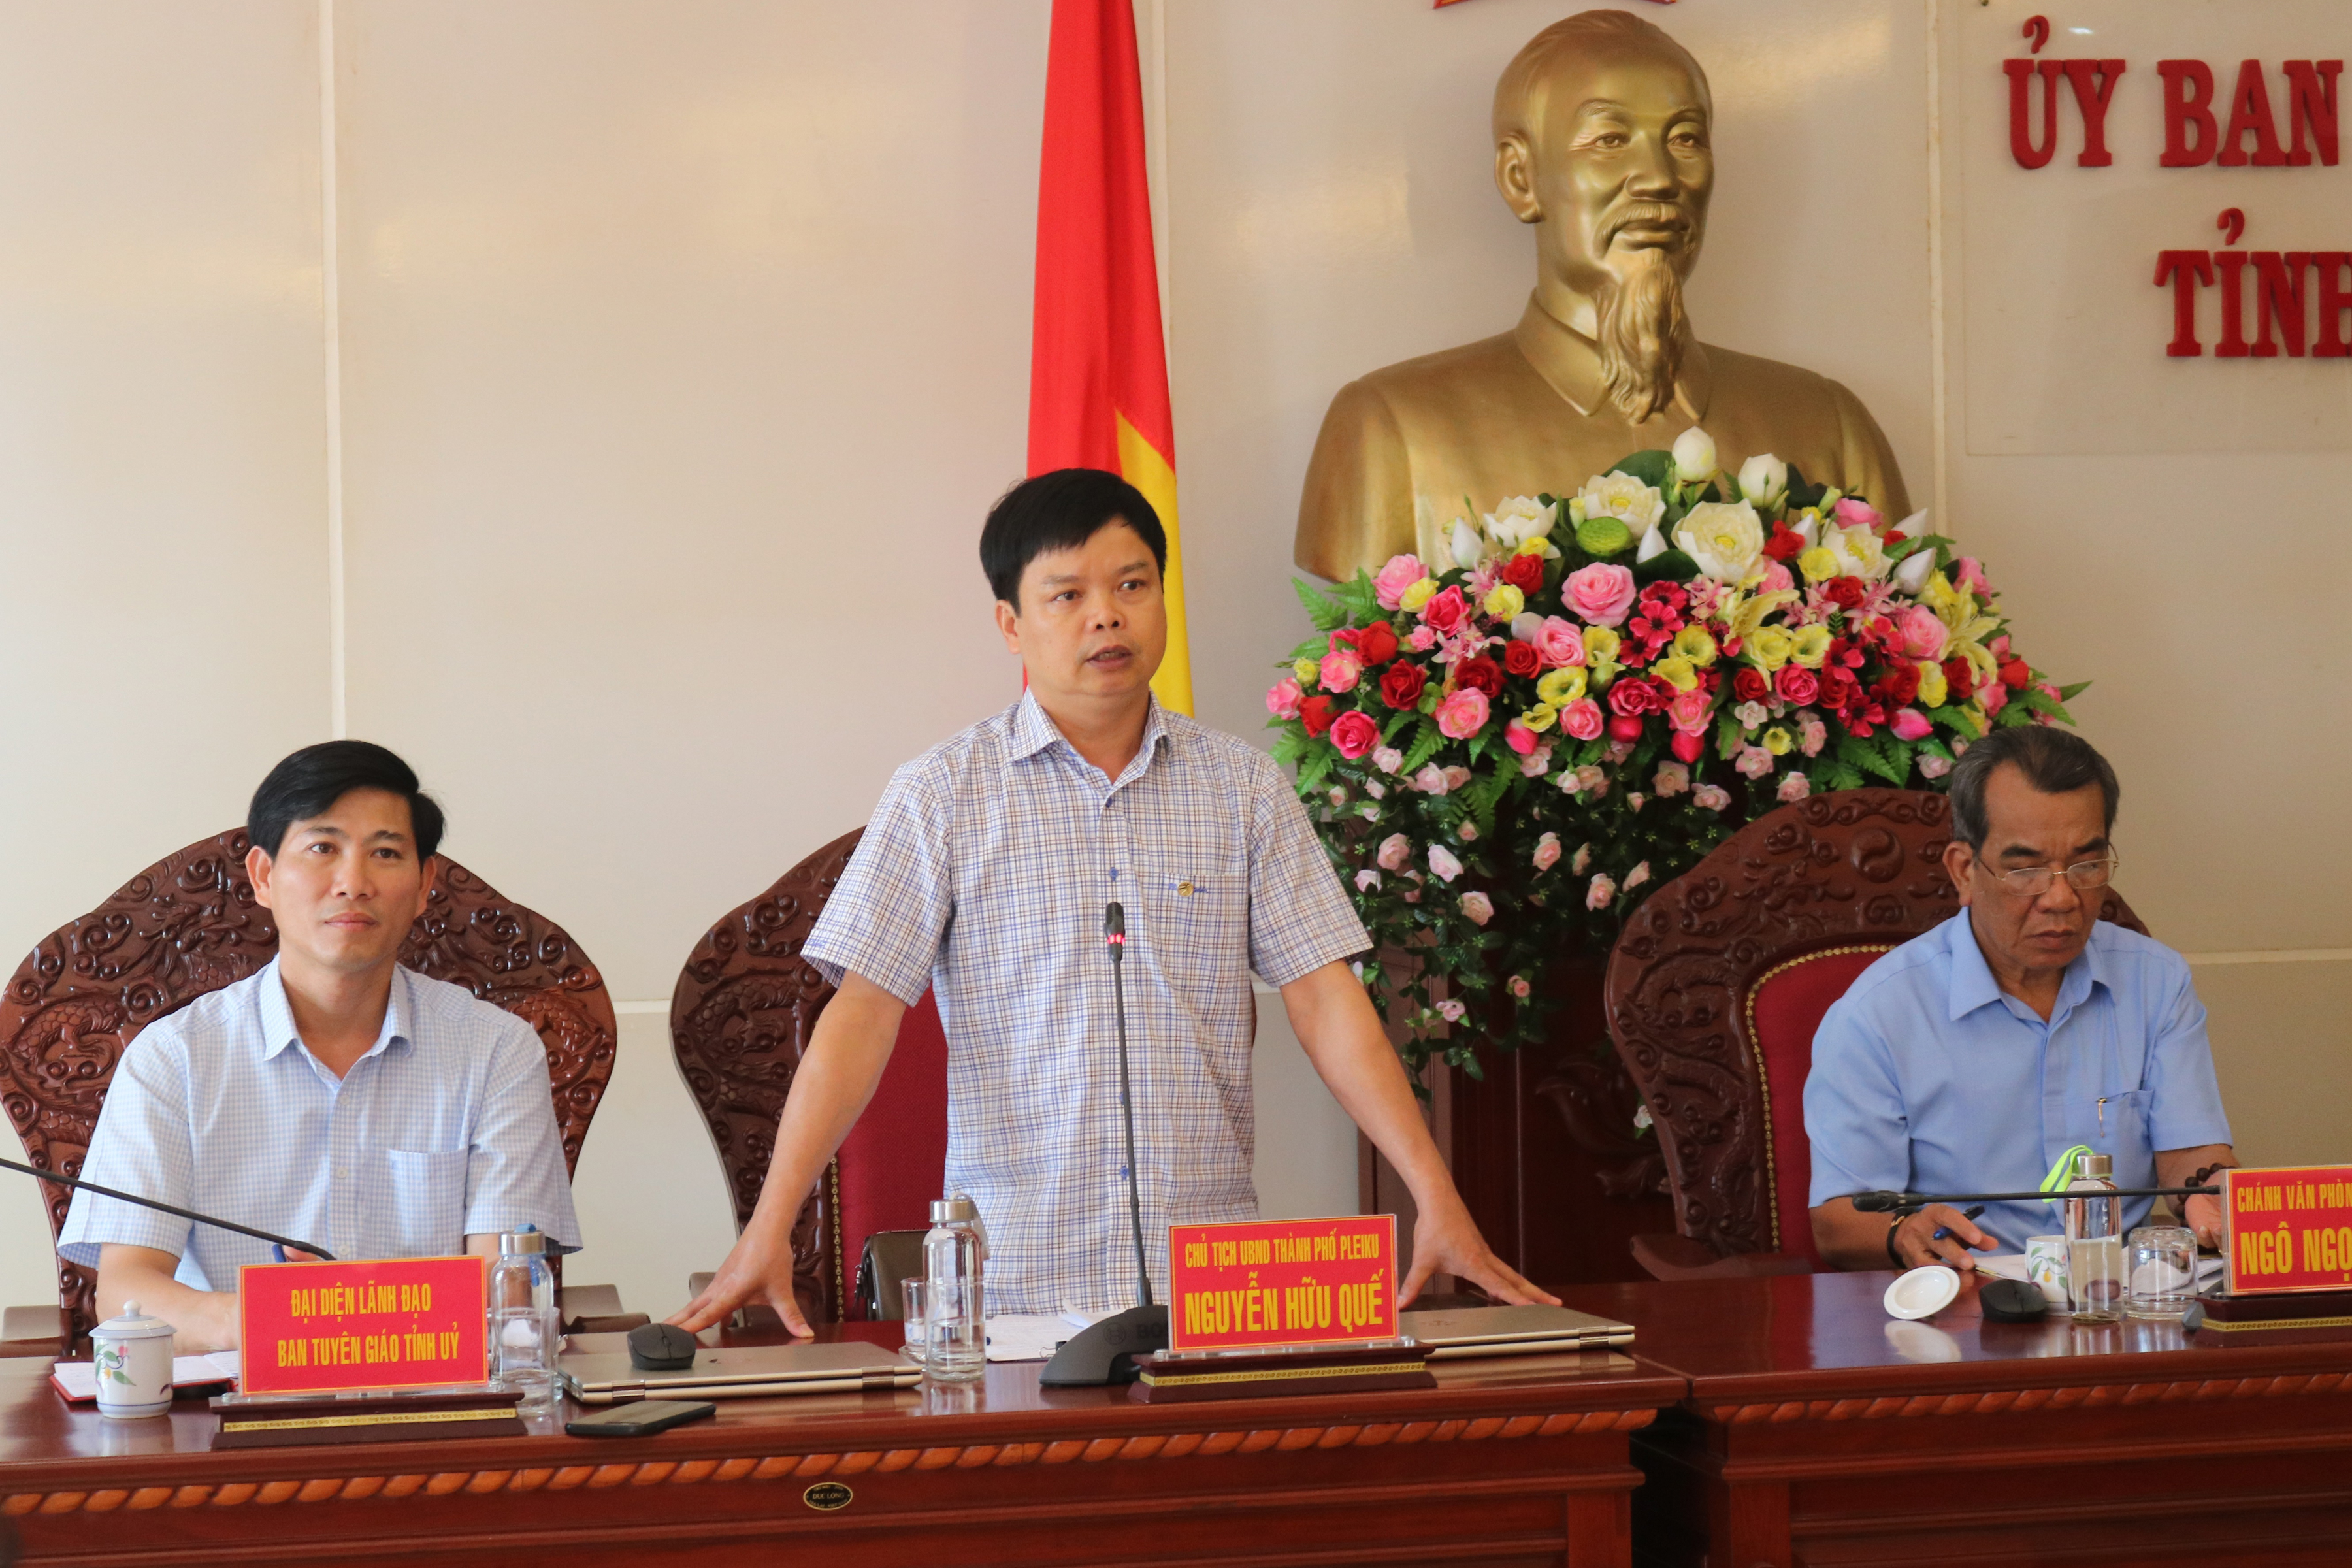 Chủ tịch UBND TP. Peliku Nguyễn Hữu Quế phát biểu tại buổi họp báo. Ảnh: Ngọc Sang